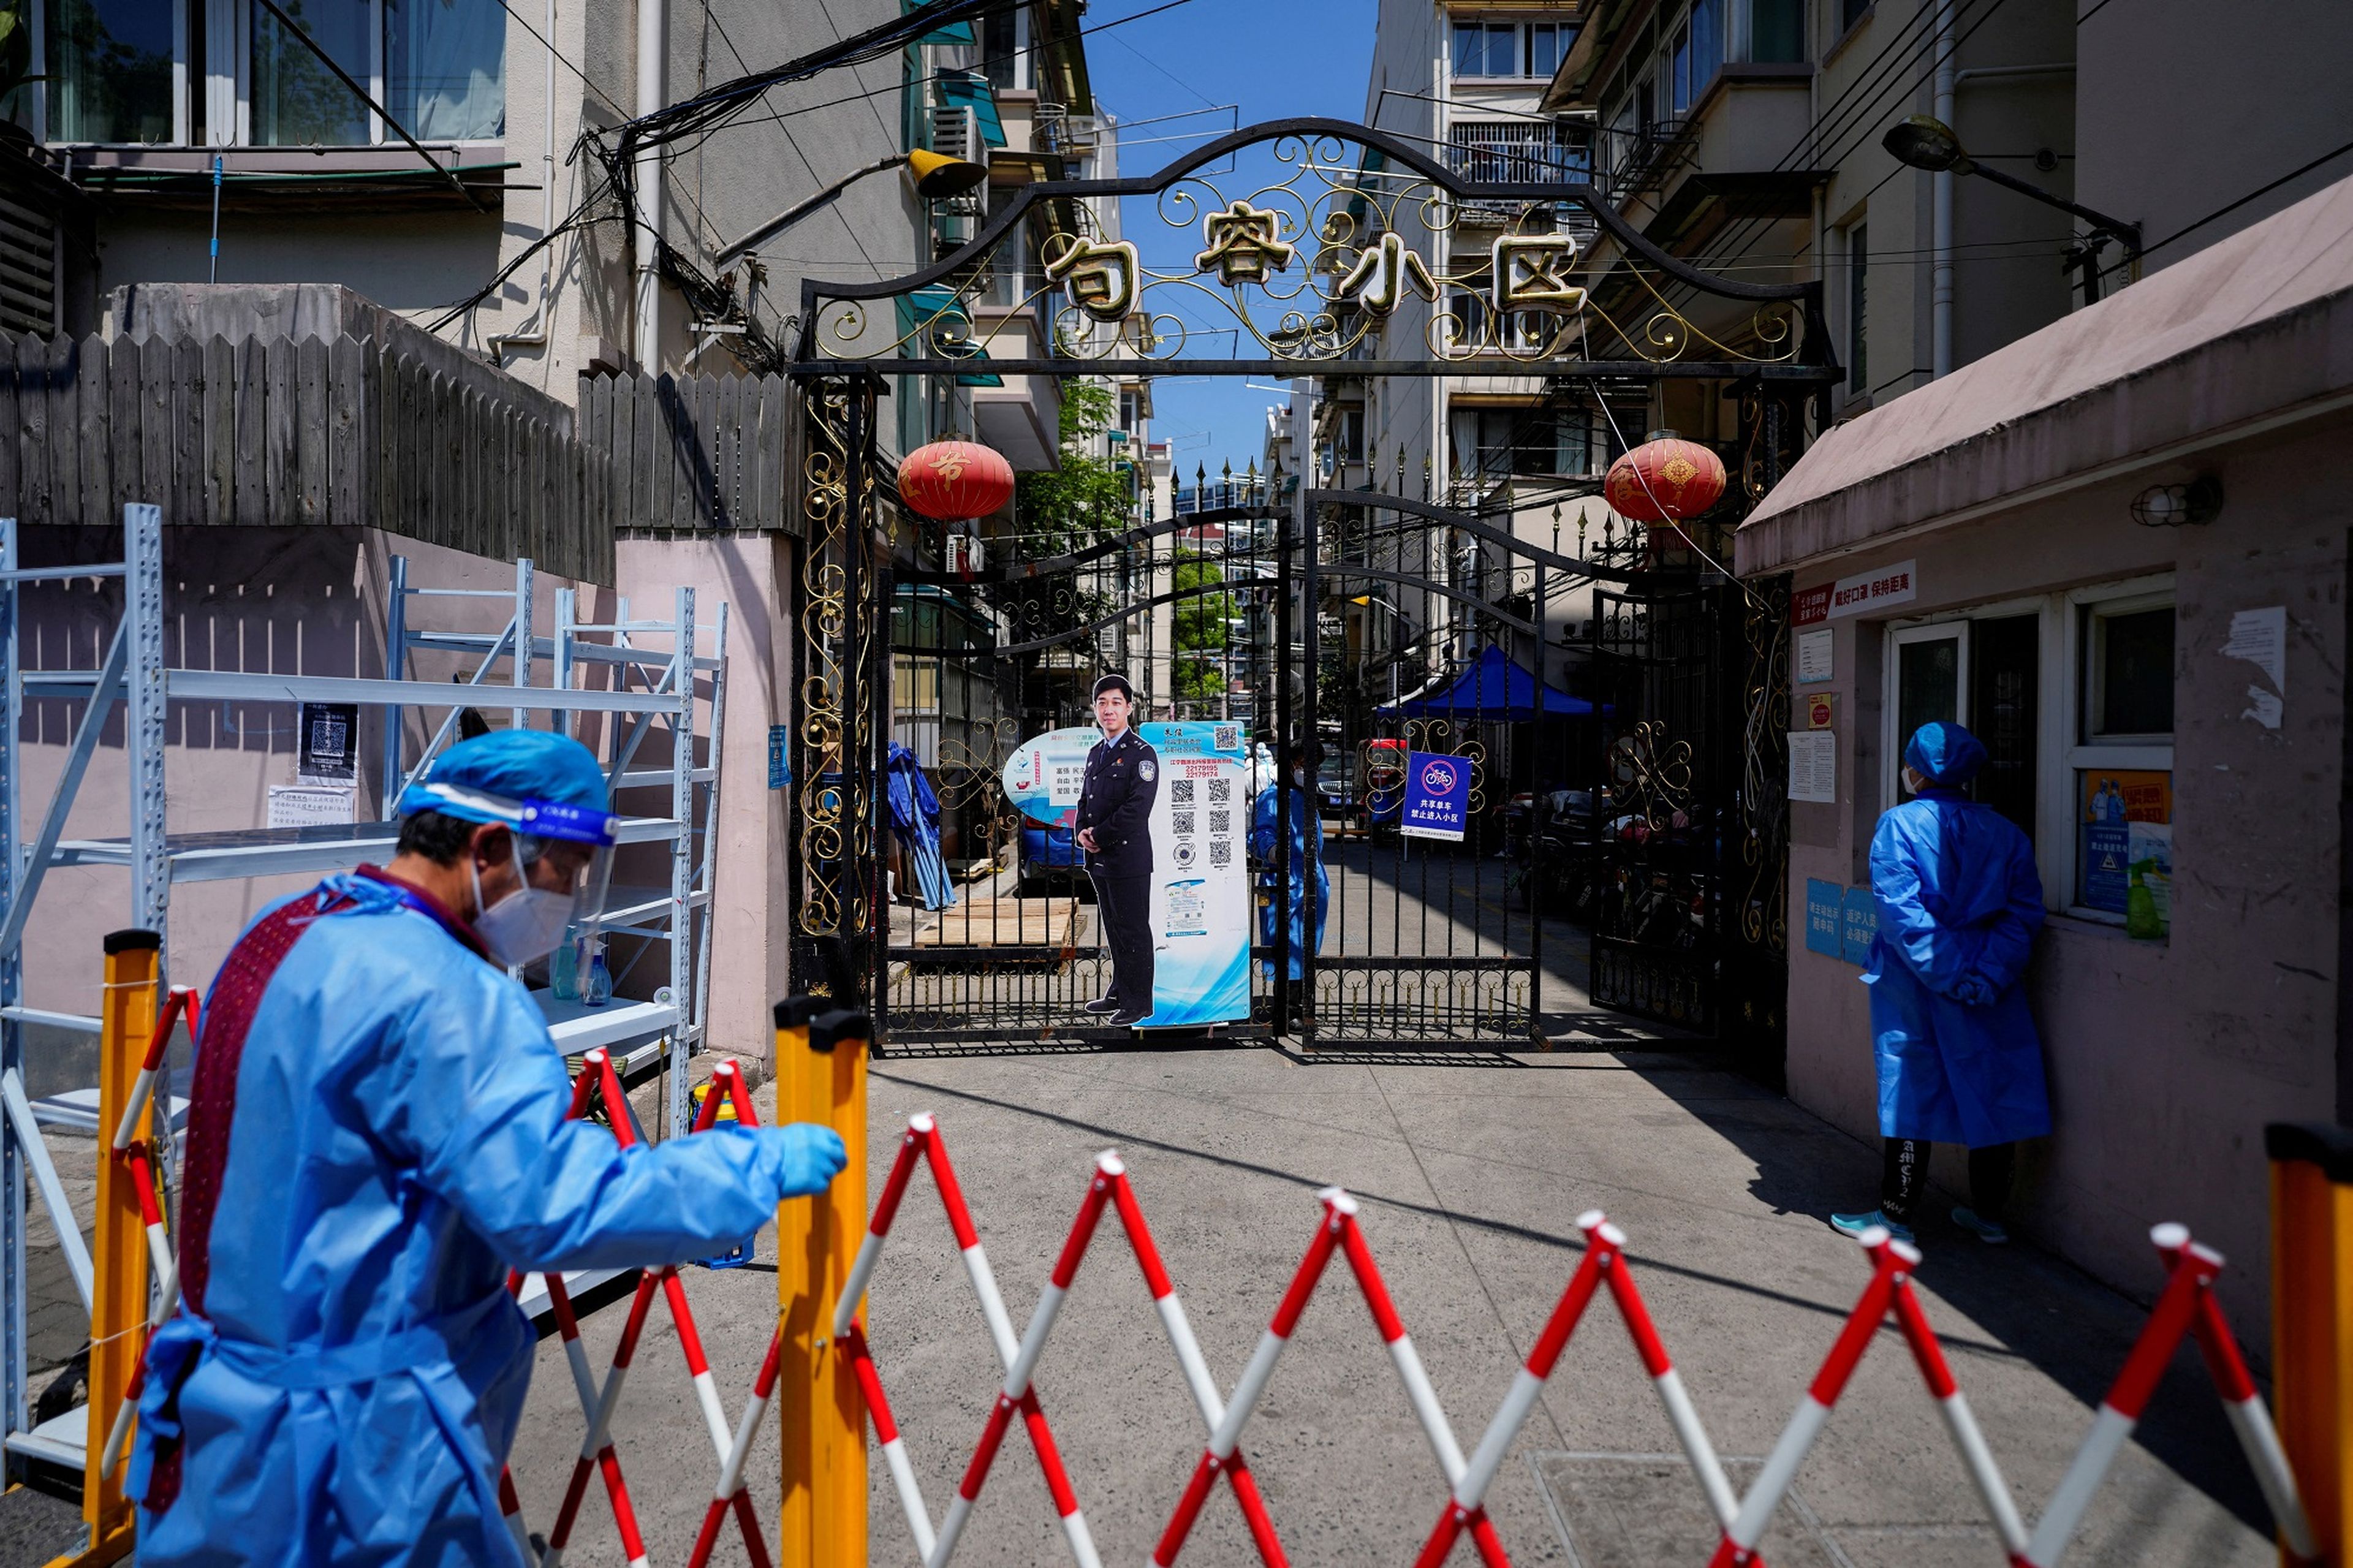 Entrada a una zona residencial en Shanghái, China, cerrada por las medidas de confinamiento adoptadas por el gobierno chino.